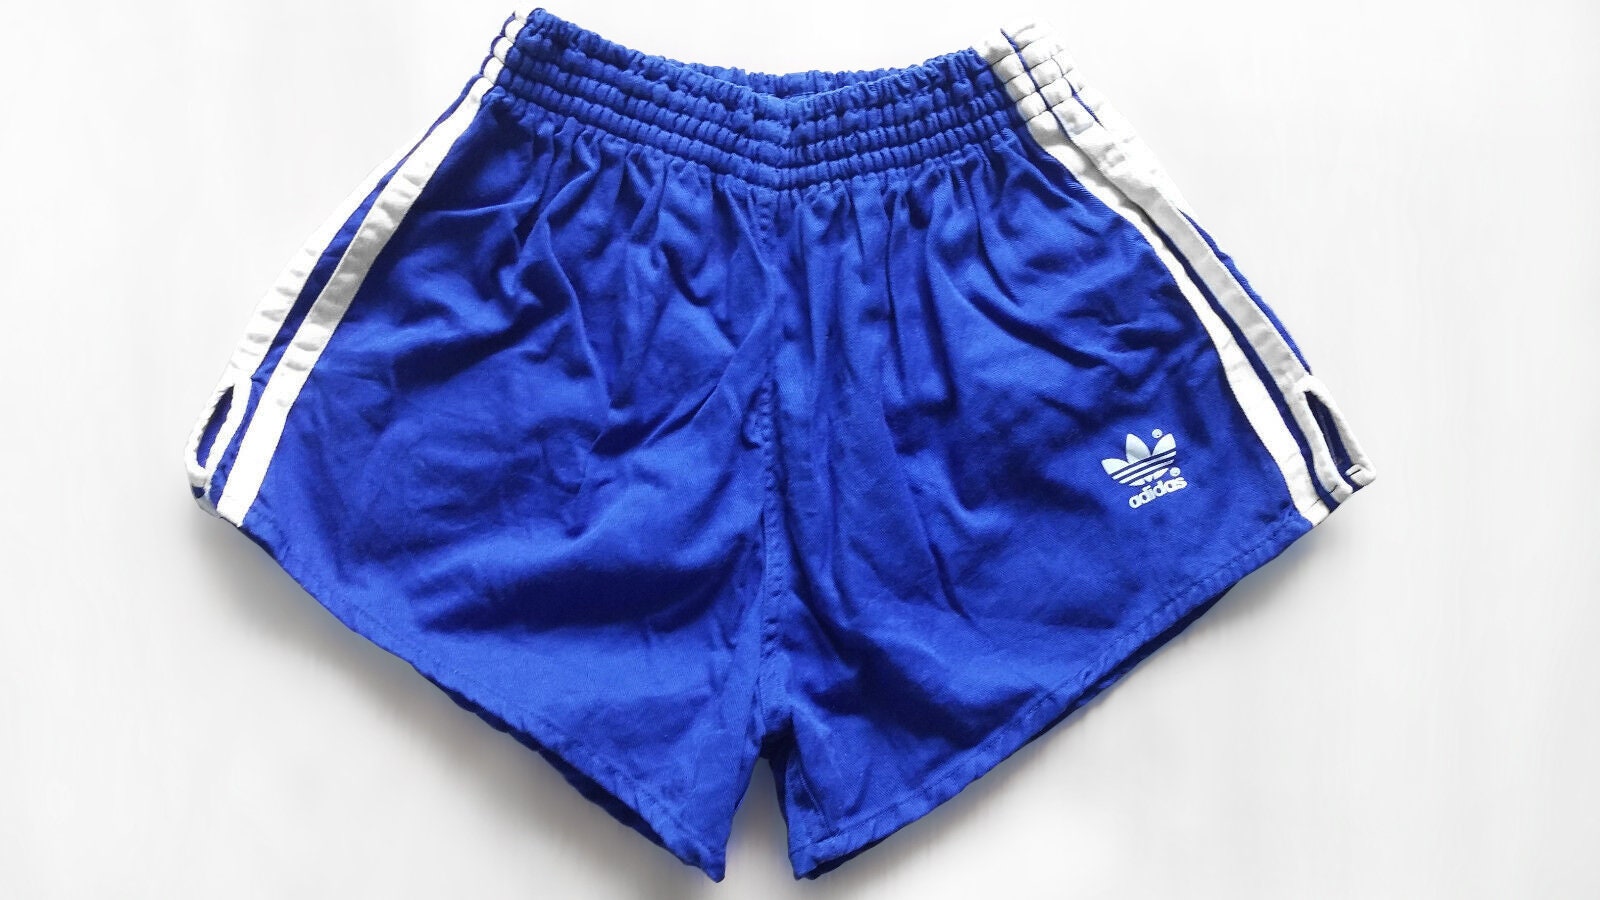 Vintage Rare Adidas Dazzle Basic 3 Stripe Basketball Shorts Navy Blue Shiny  S